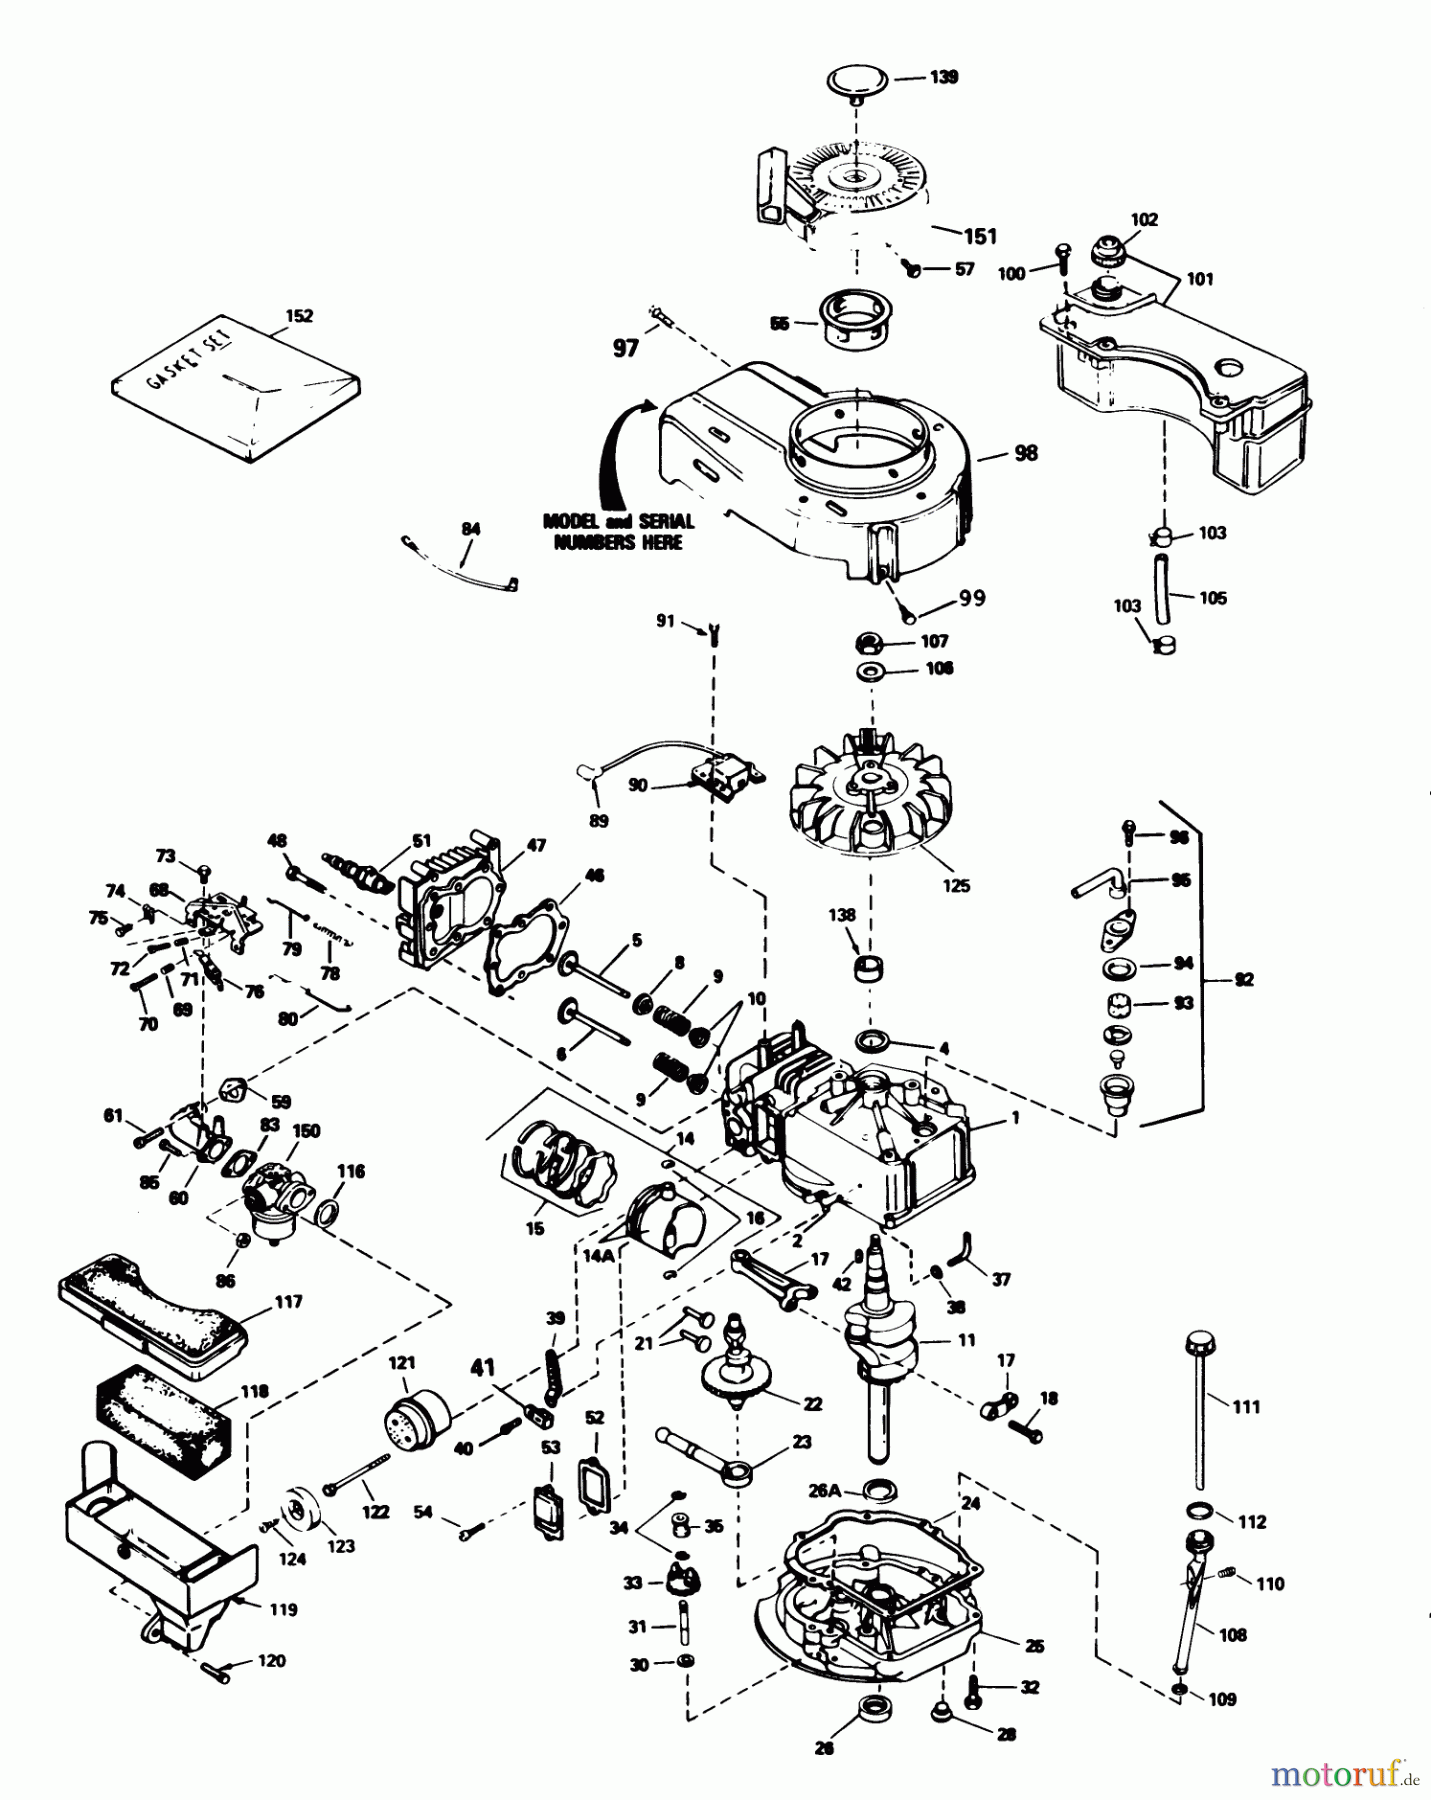  Toro Neu Mowers, Walk-Behind Seite 1 20780C - Toro Lawnmower, 1988 (8000001-8999999) ENGINE TECUMSEH MODEL NO. TVS100-44014B